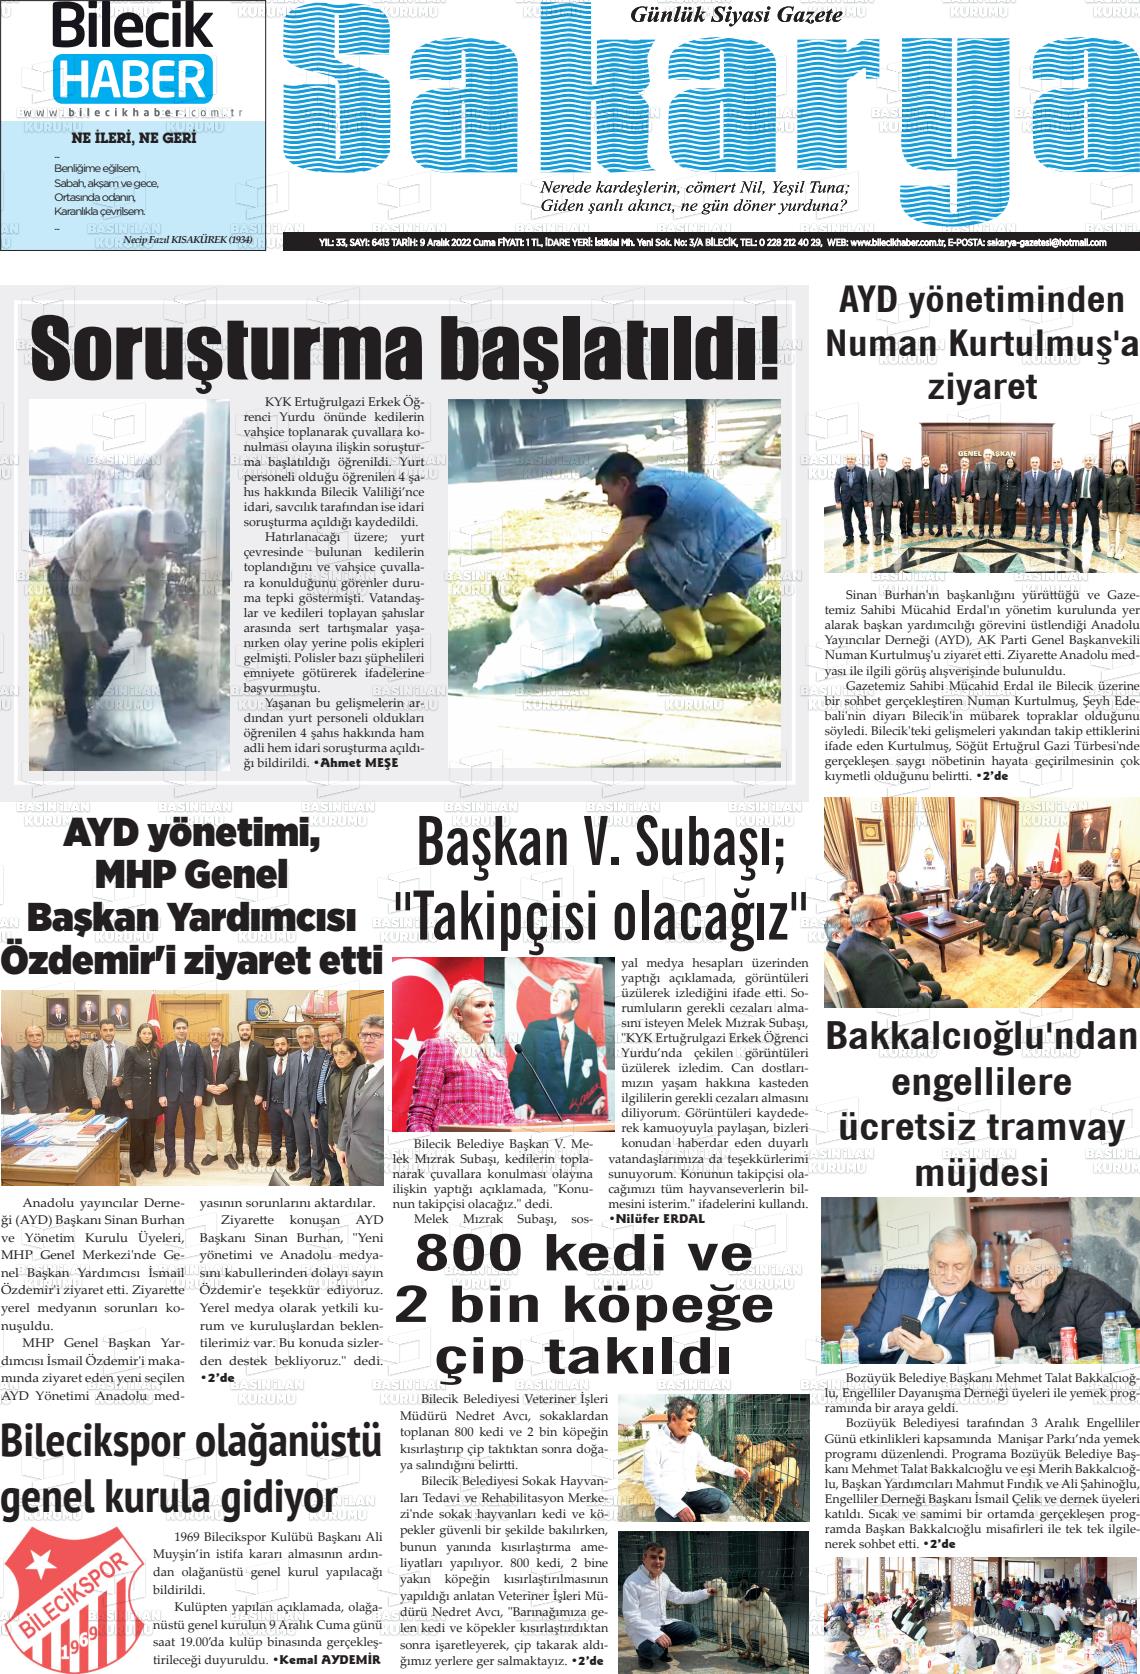 09 Aralık 2022 Bilecik Haber Sakarya Gazete Manşeti